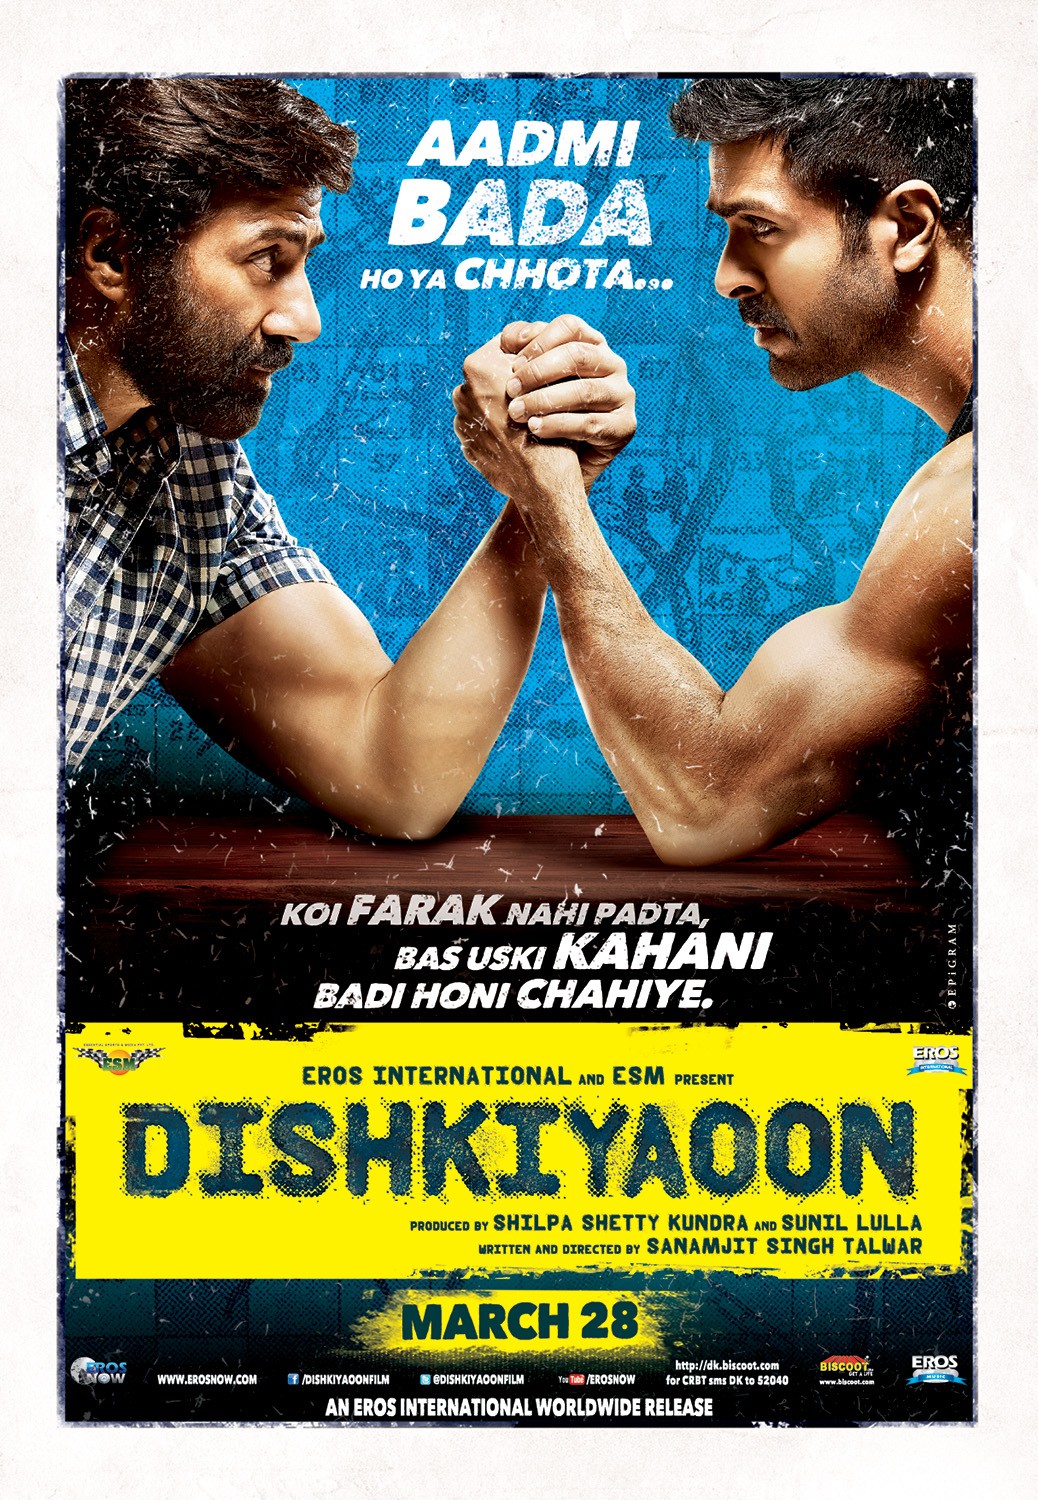 Extra Large Movie Poster Image for Dishkiyaoon (#4 of 5)